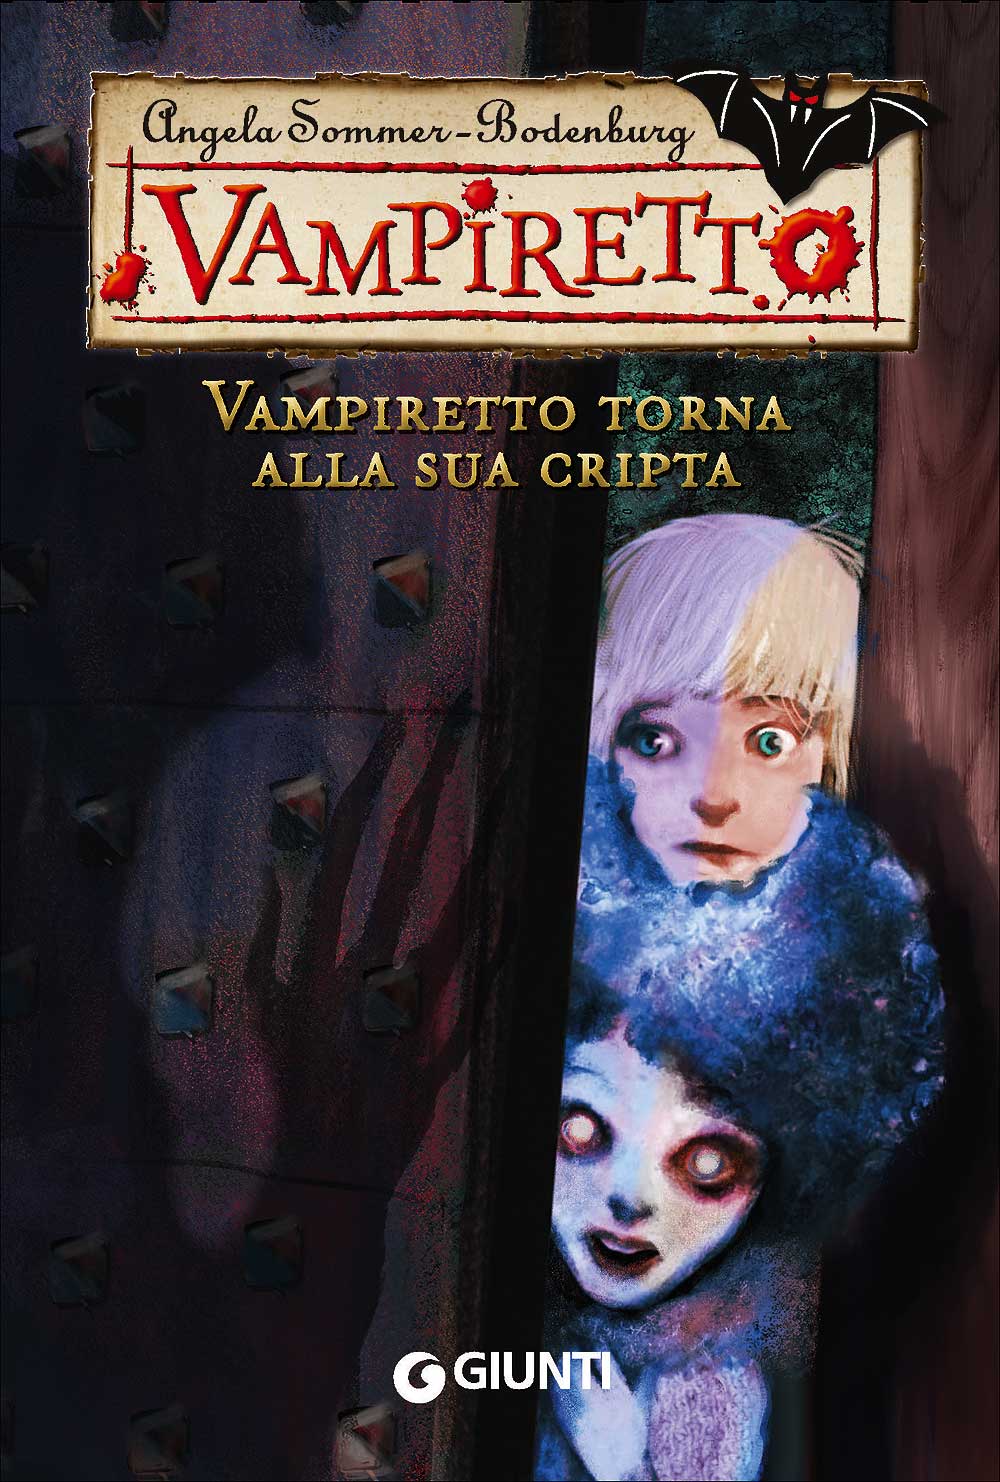 Vampiretto torna alla sua cripta